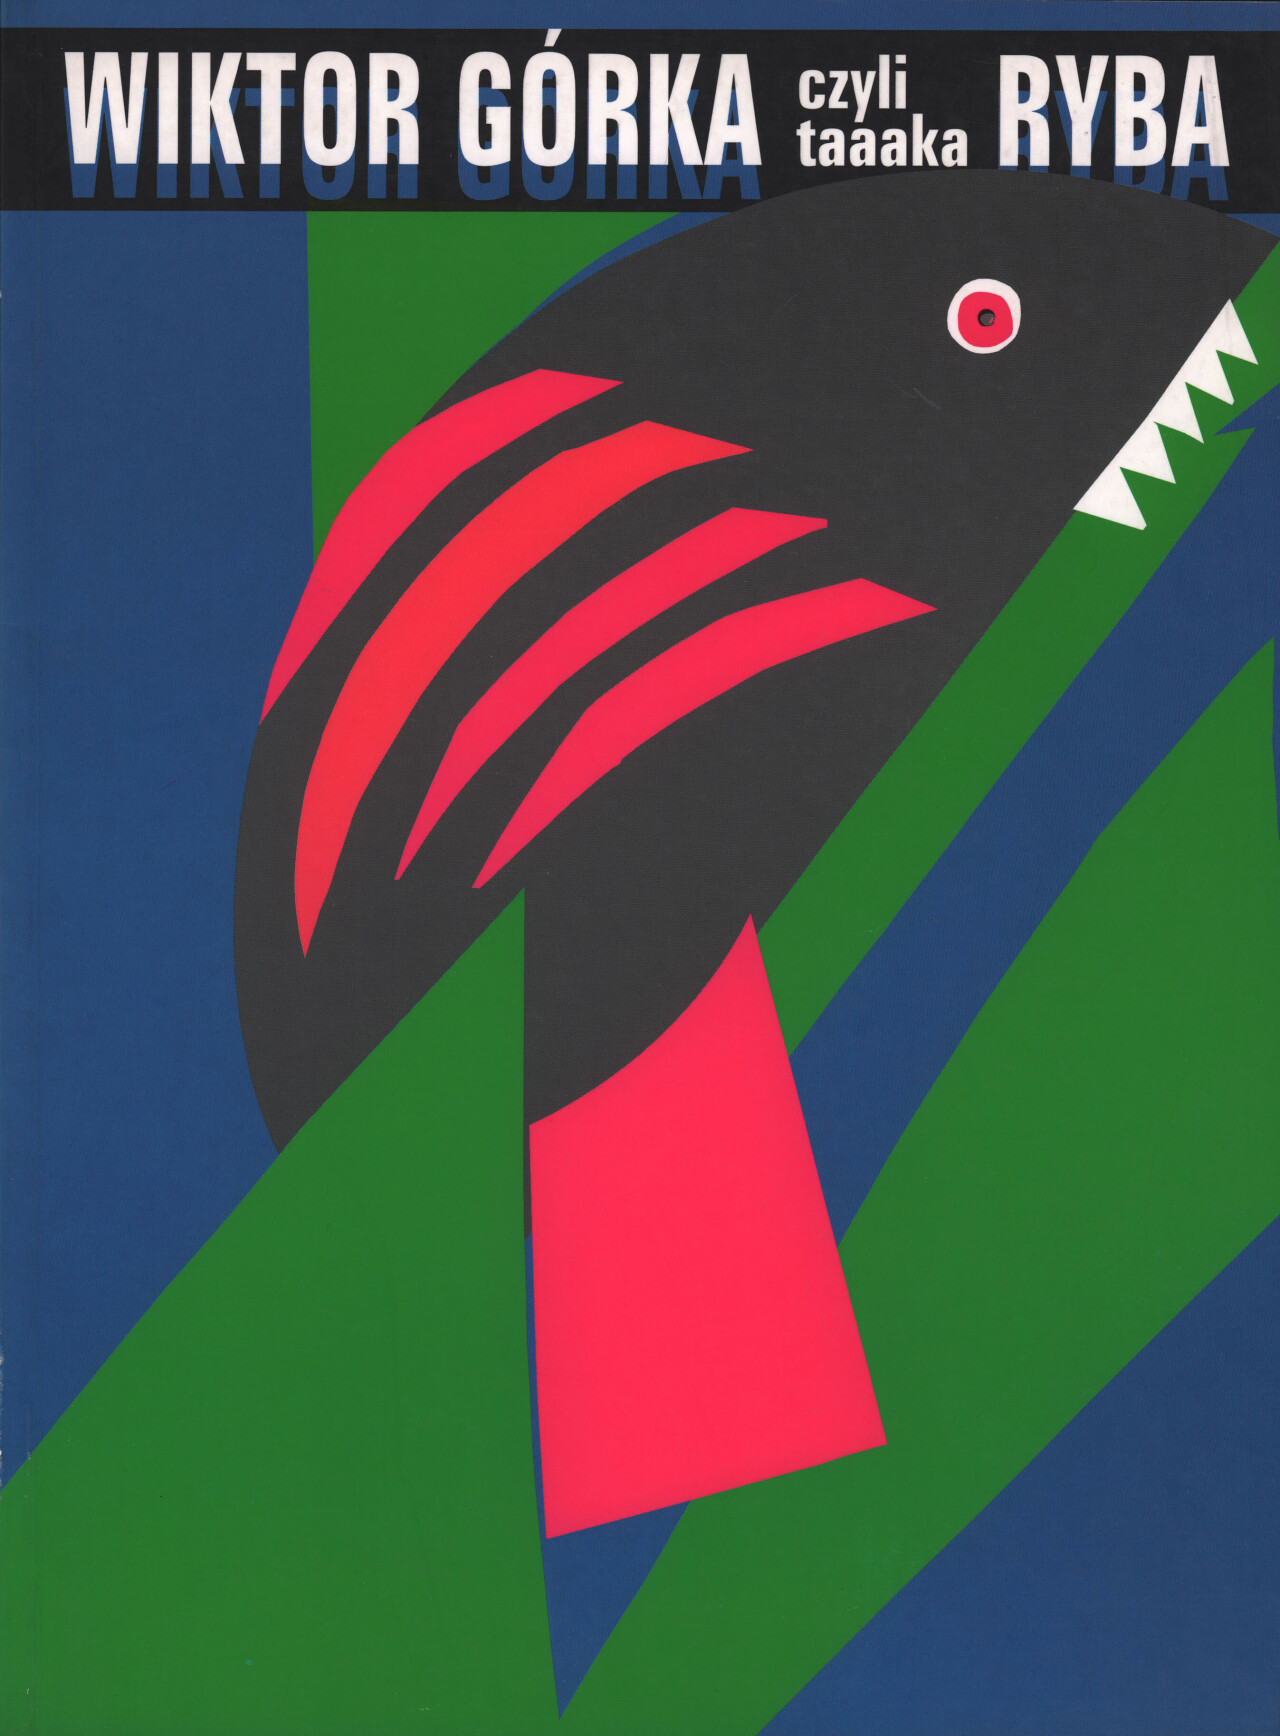 Крупная рыба, польский постер к фильму, автор Виктор Горка (графический дизайн, 1999 год)